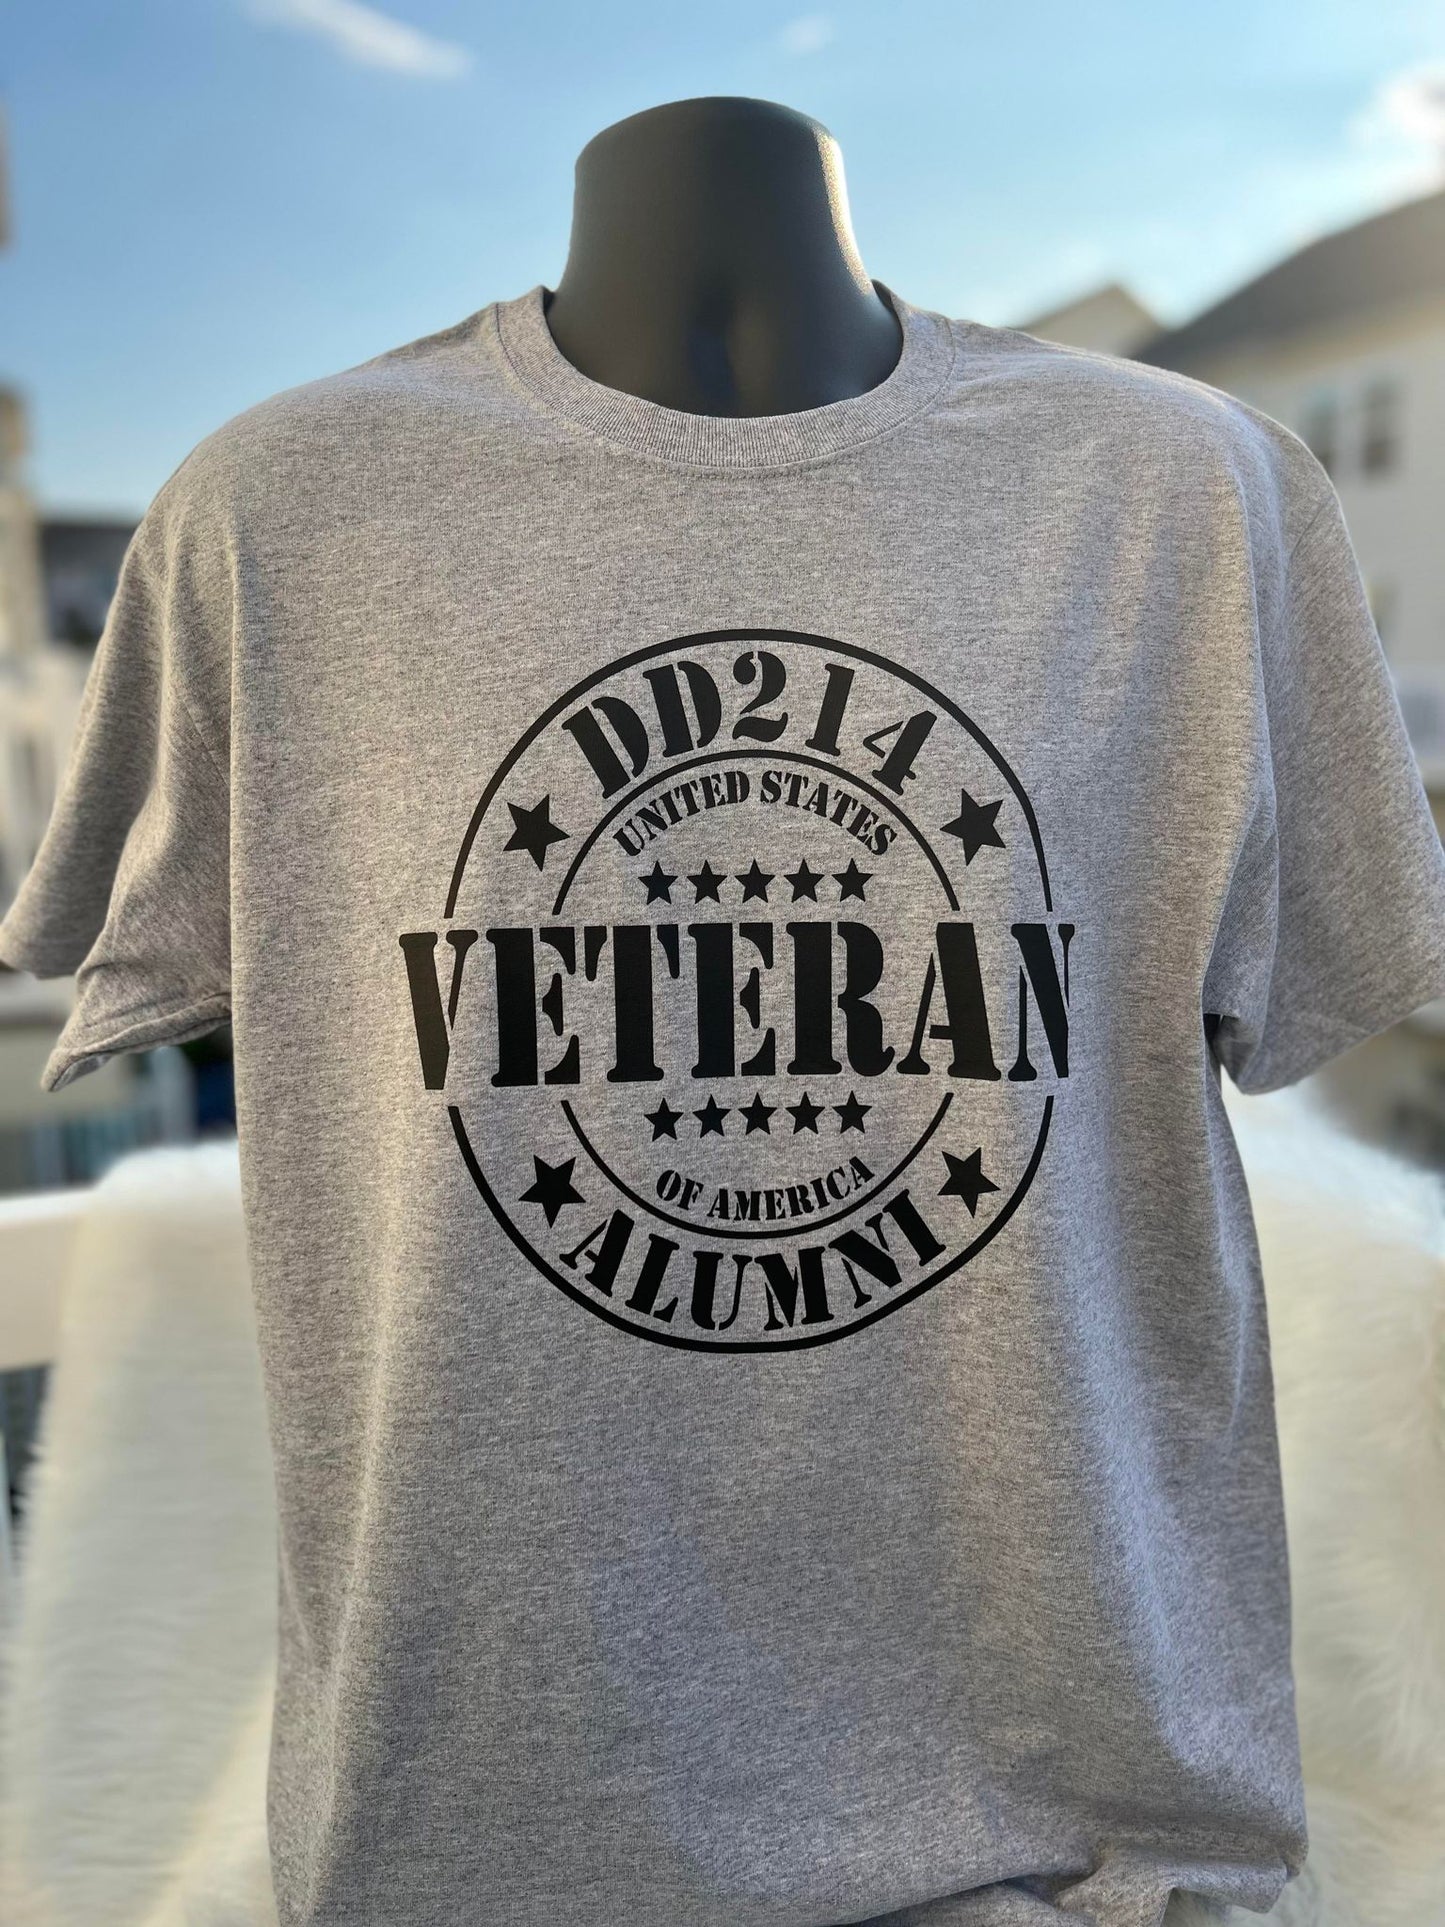 DD214 Veteran Alumni Tshirt